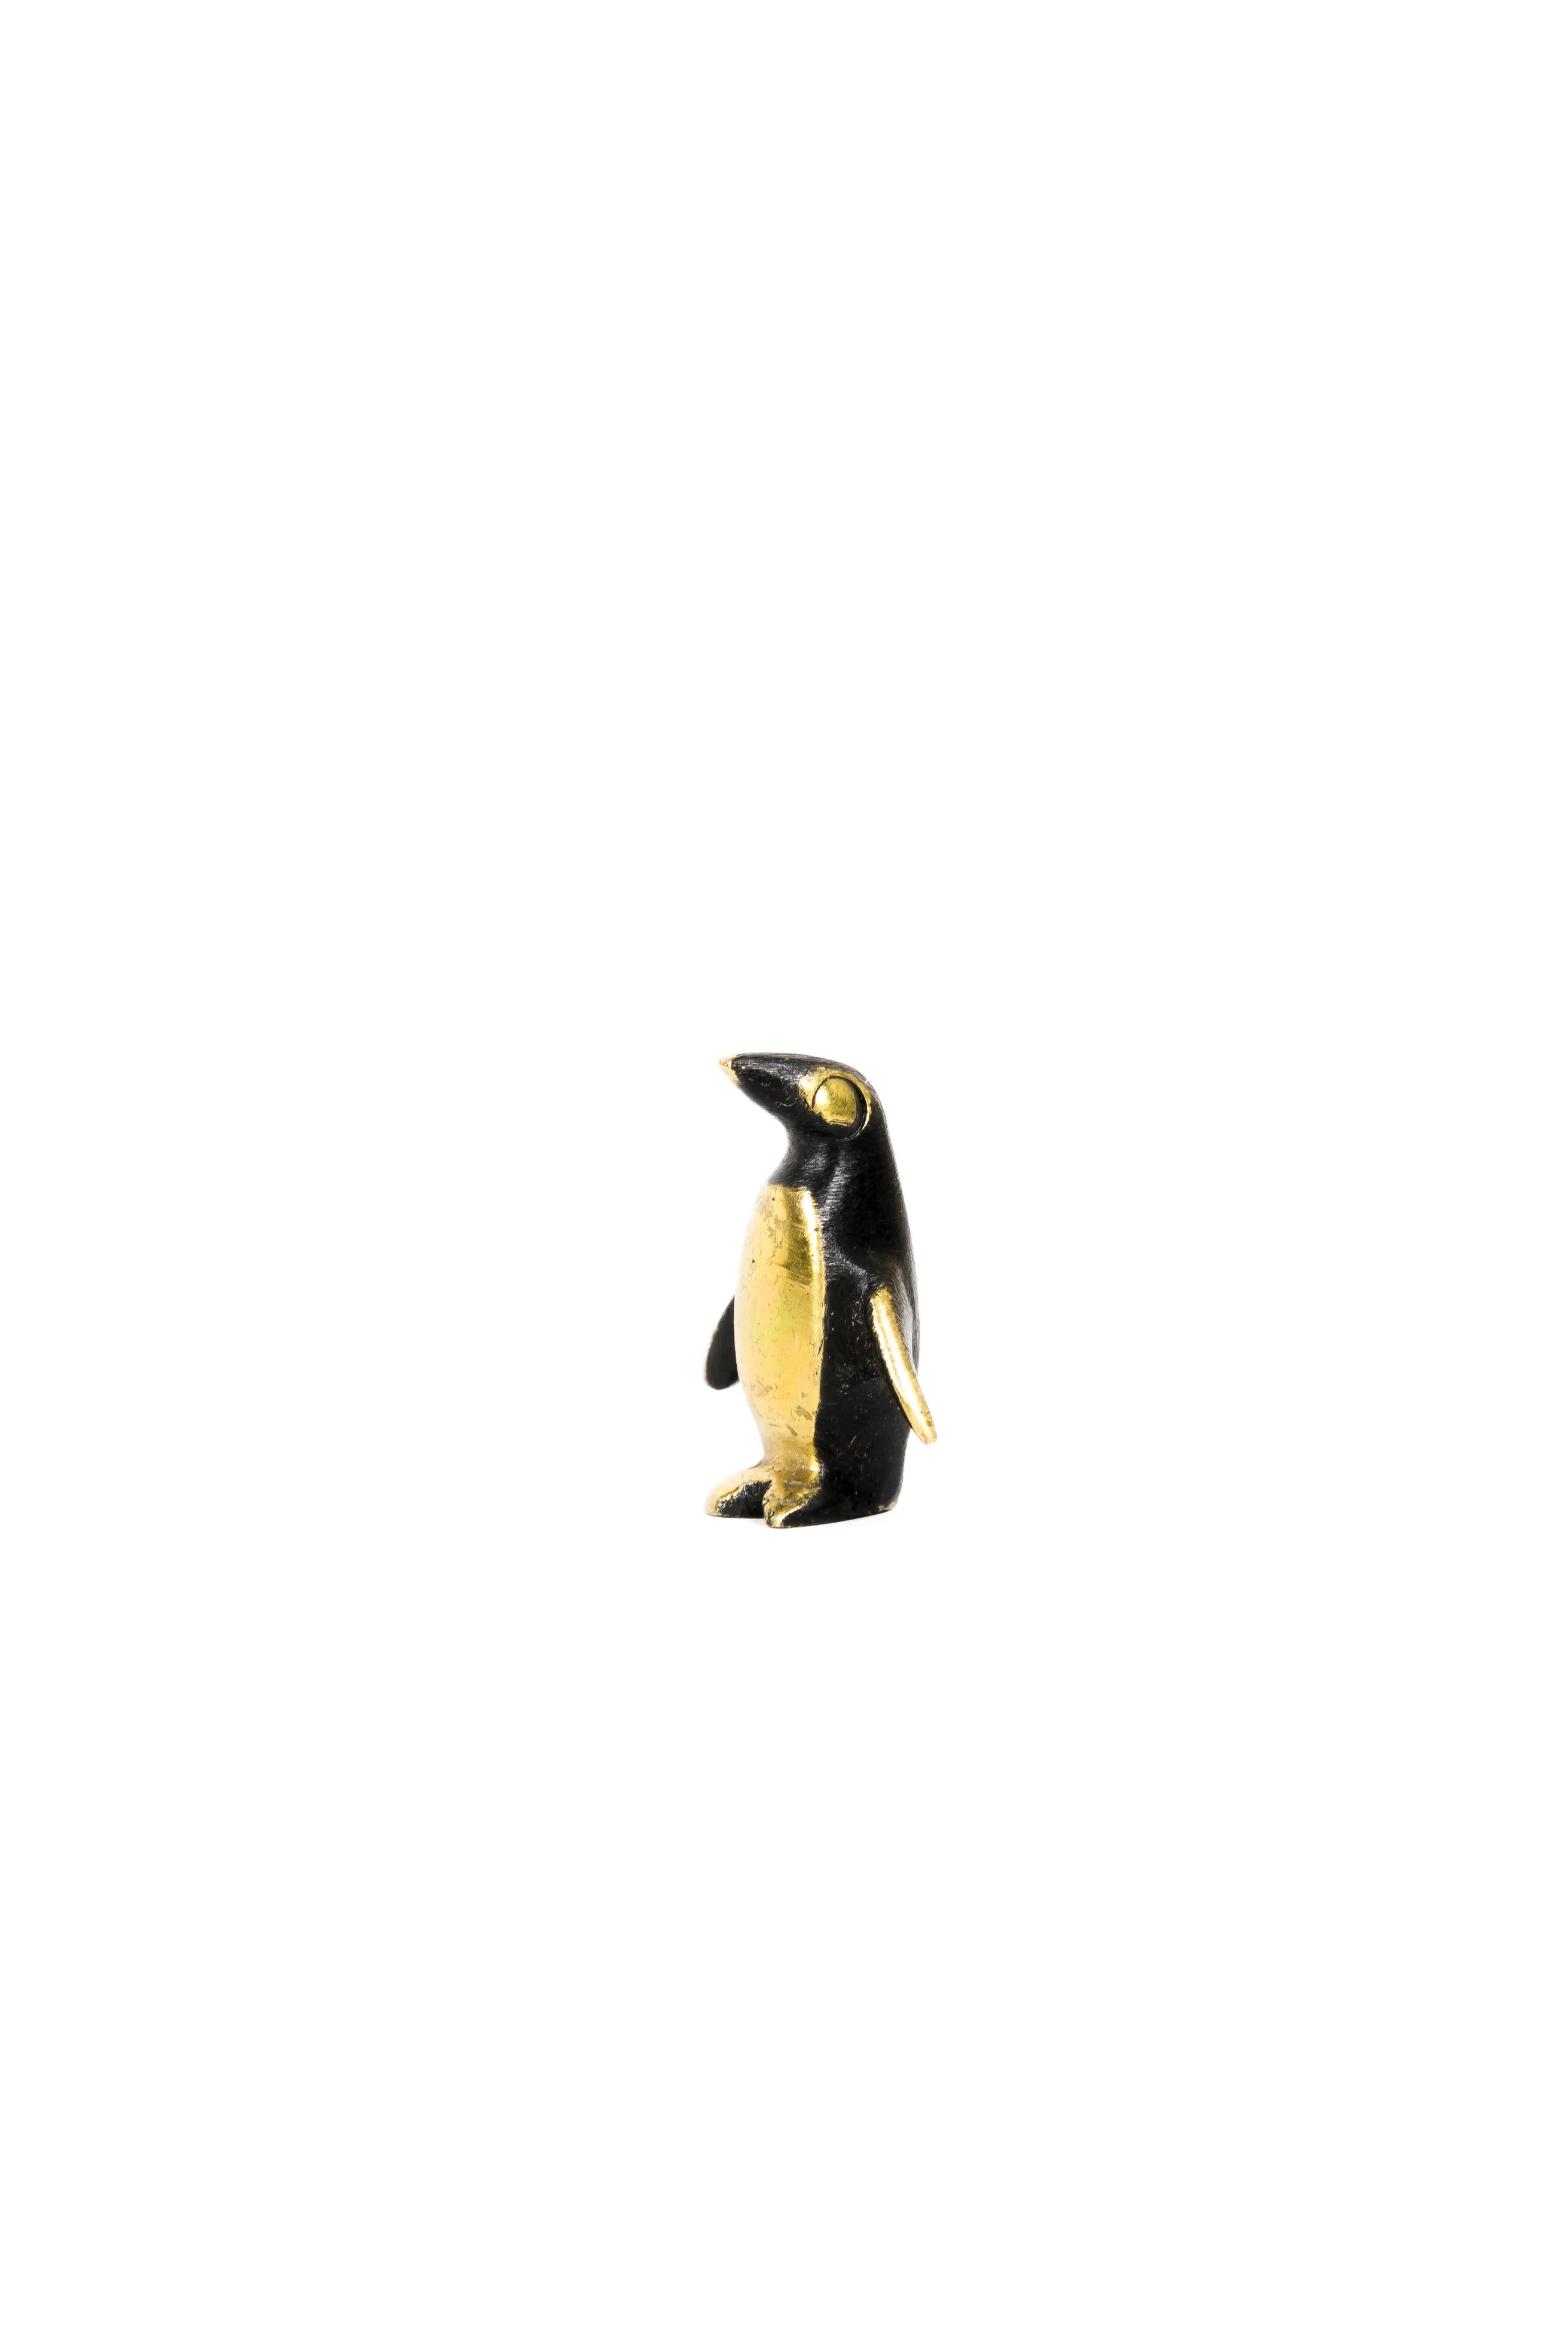 Kleiner Pinguin von Walter Bosse, um 1950er Jahre
Markierung Österreich auf der Unterseite
Ursprünglicher Zustand.
 